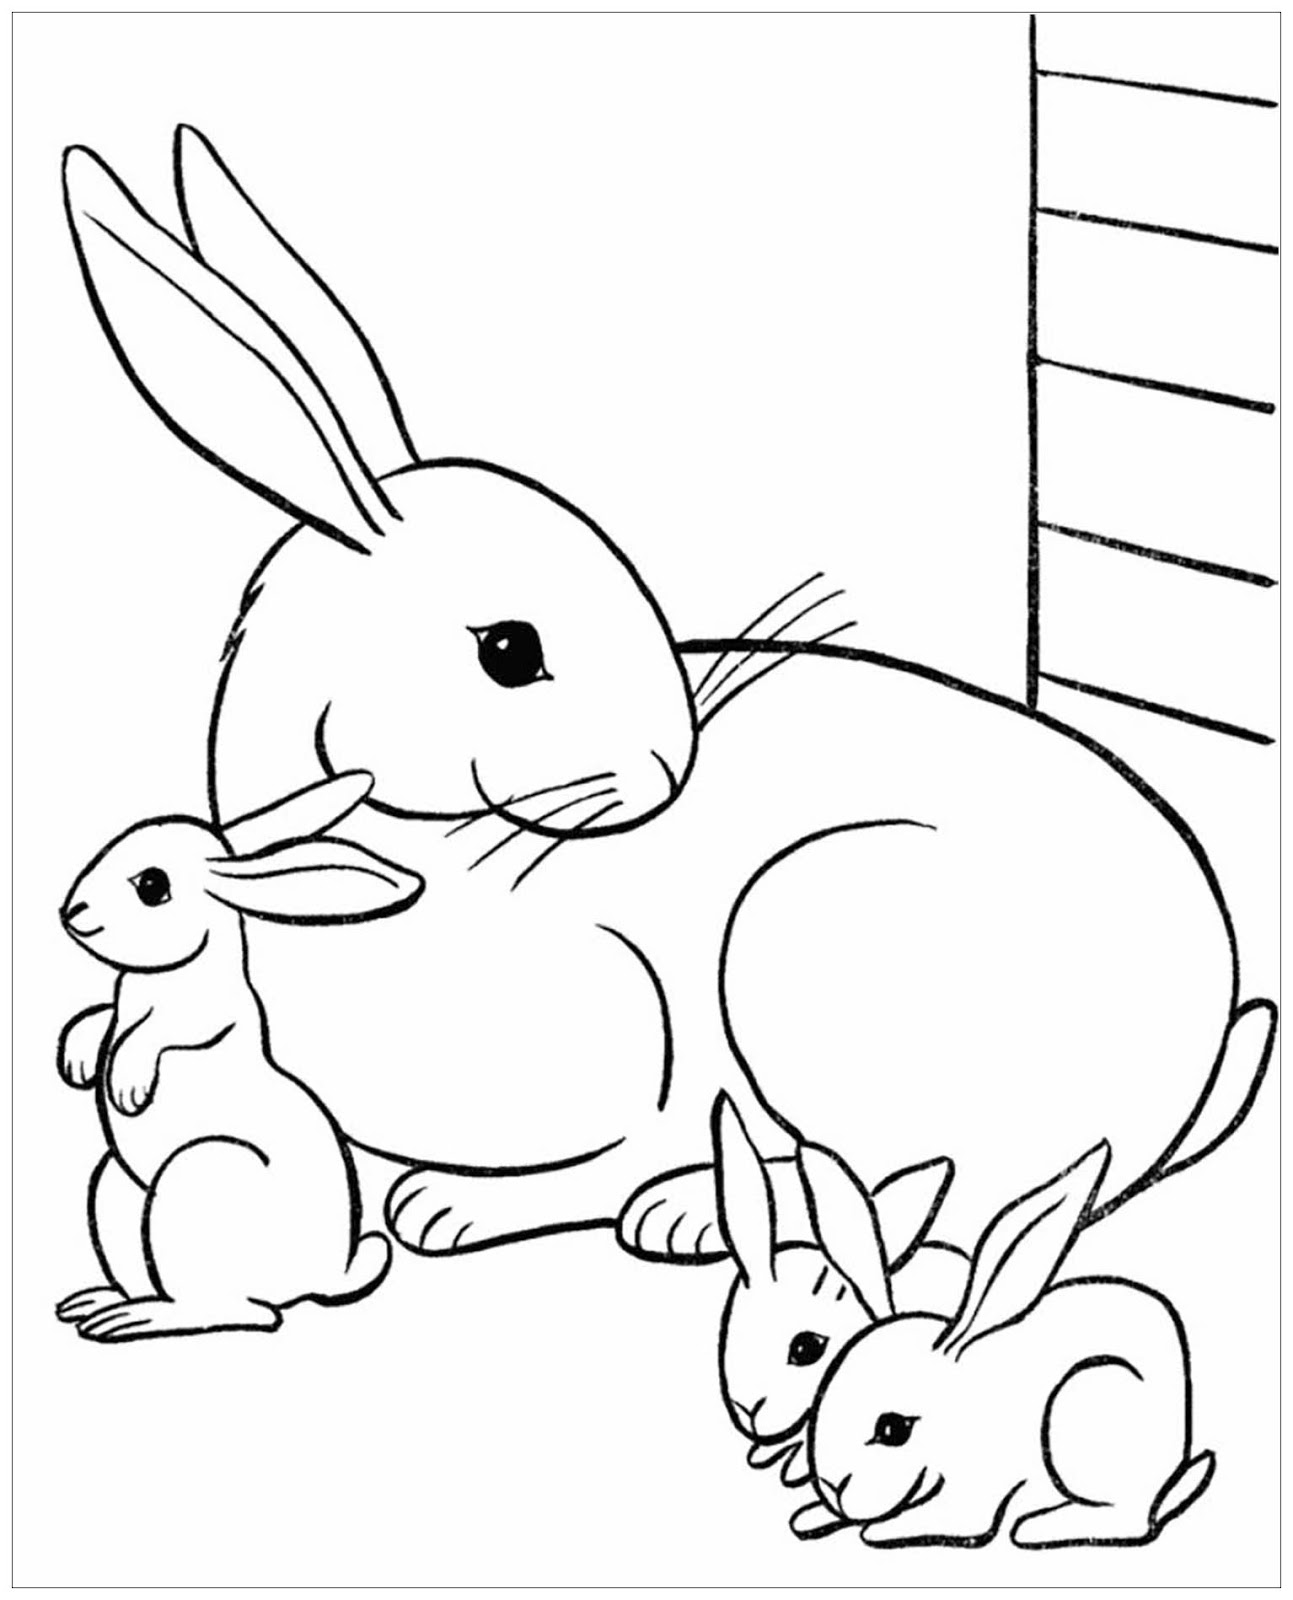 Tranh tô màu thỏ mẹ và ba chú thỏ con